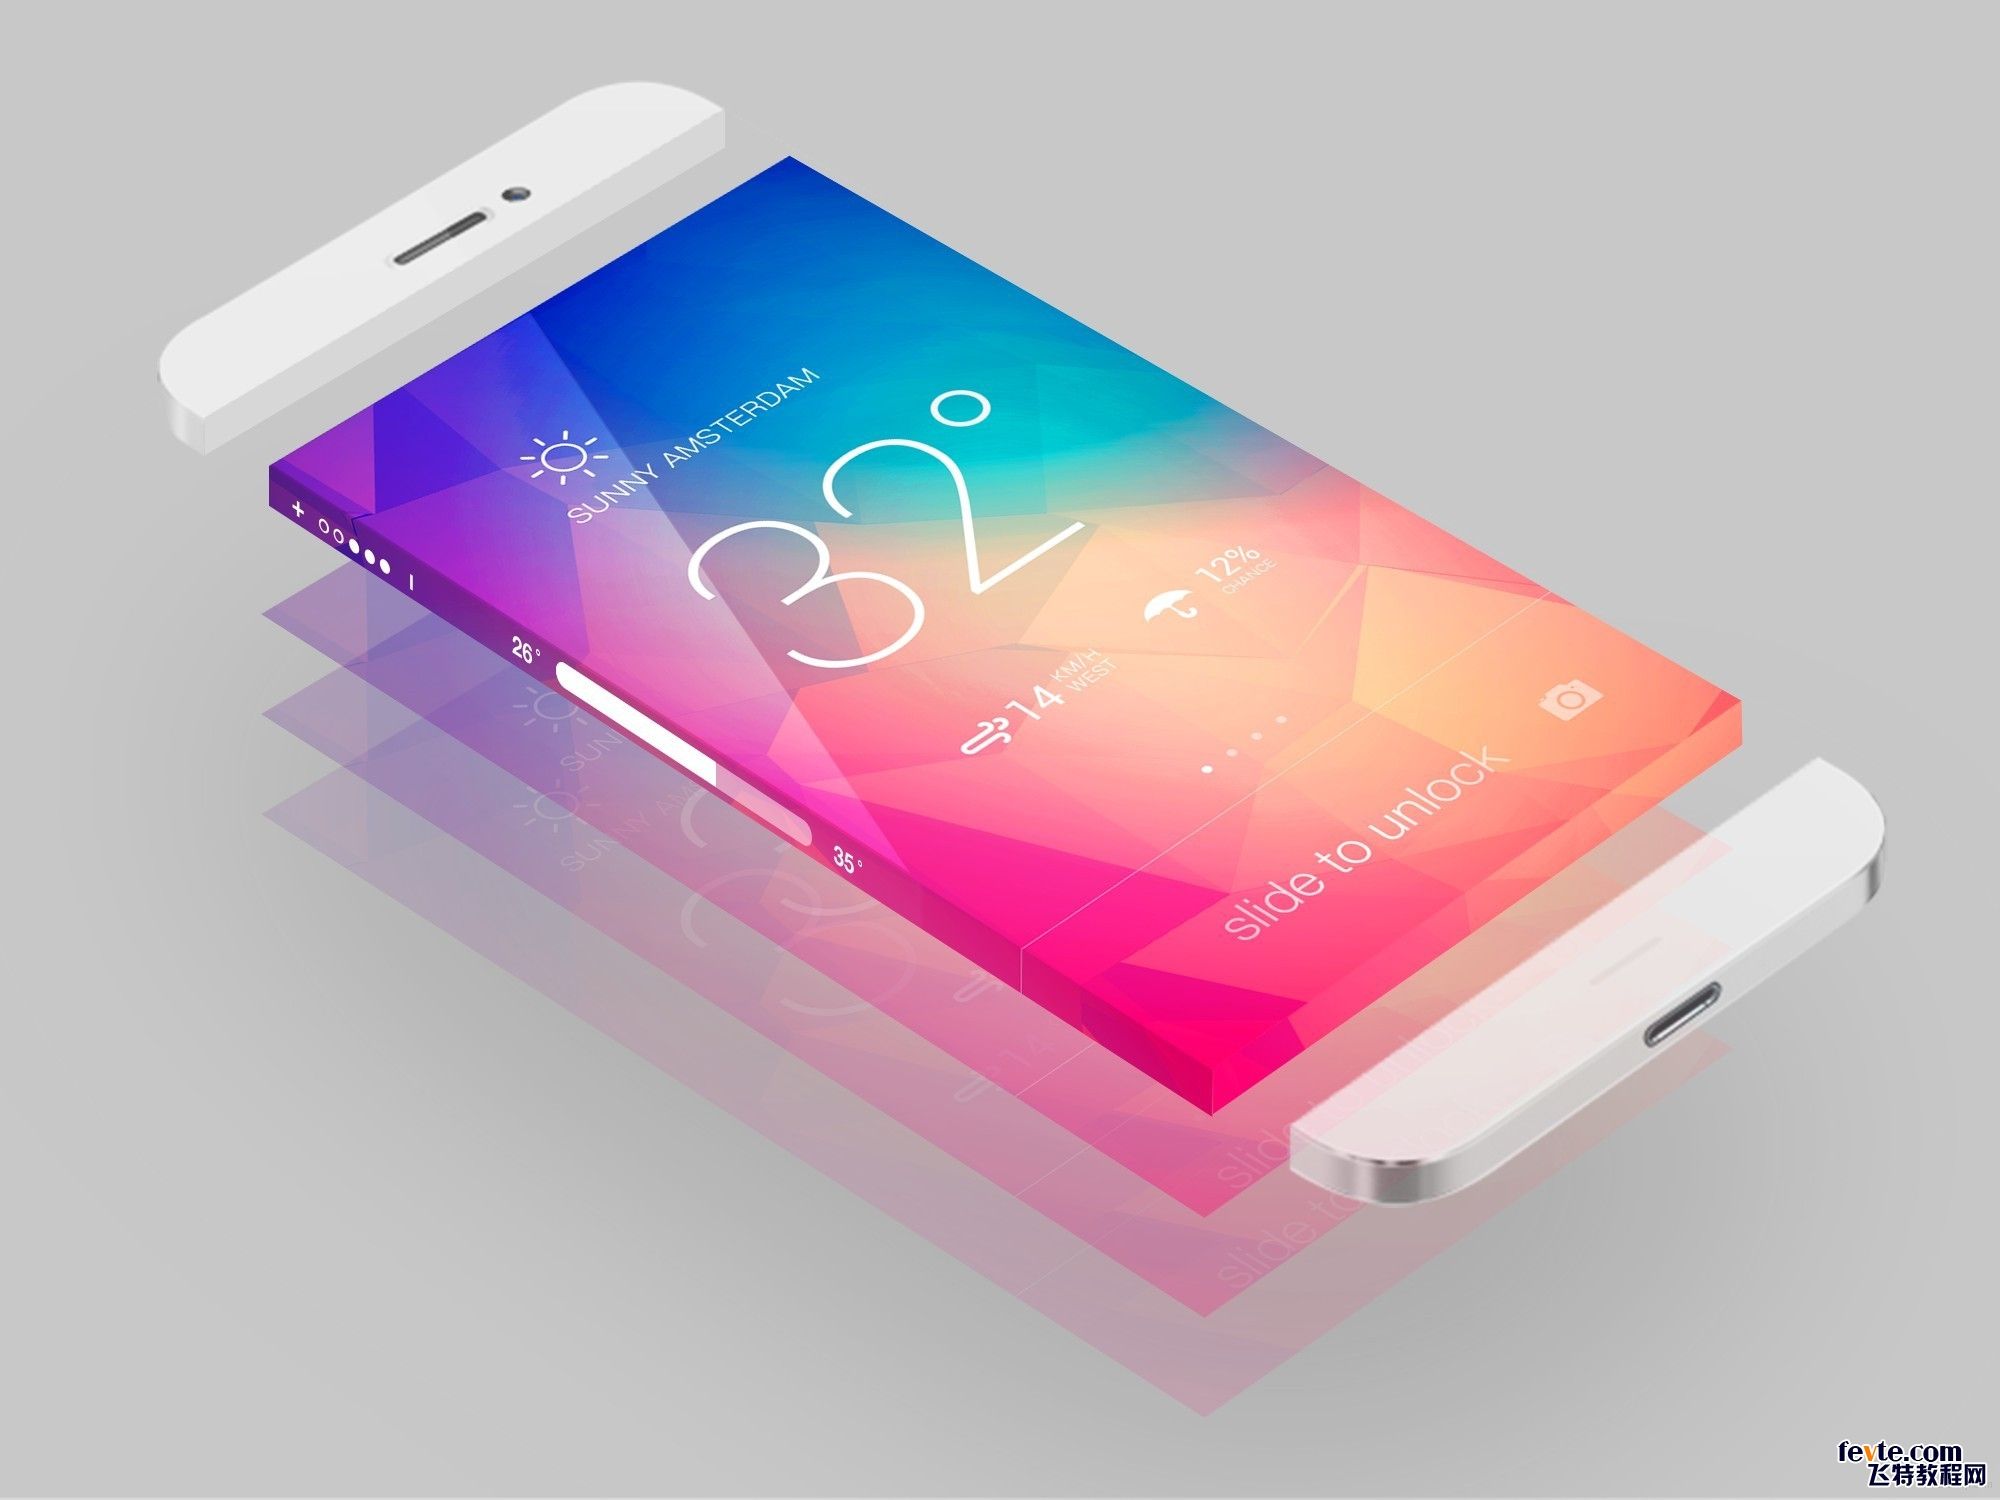 超级精美漂亮的piPhone 6手机ui界面设计欣赏